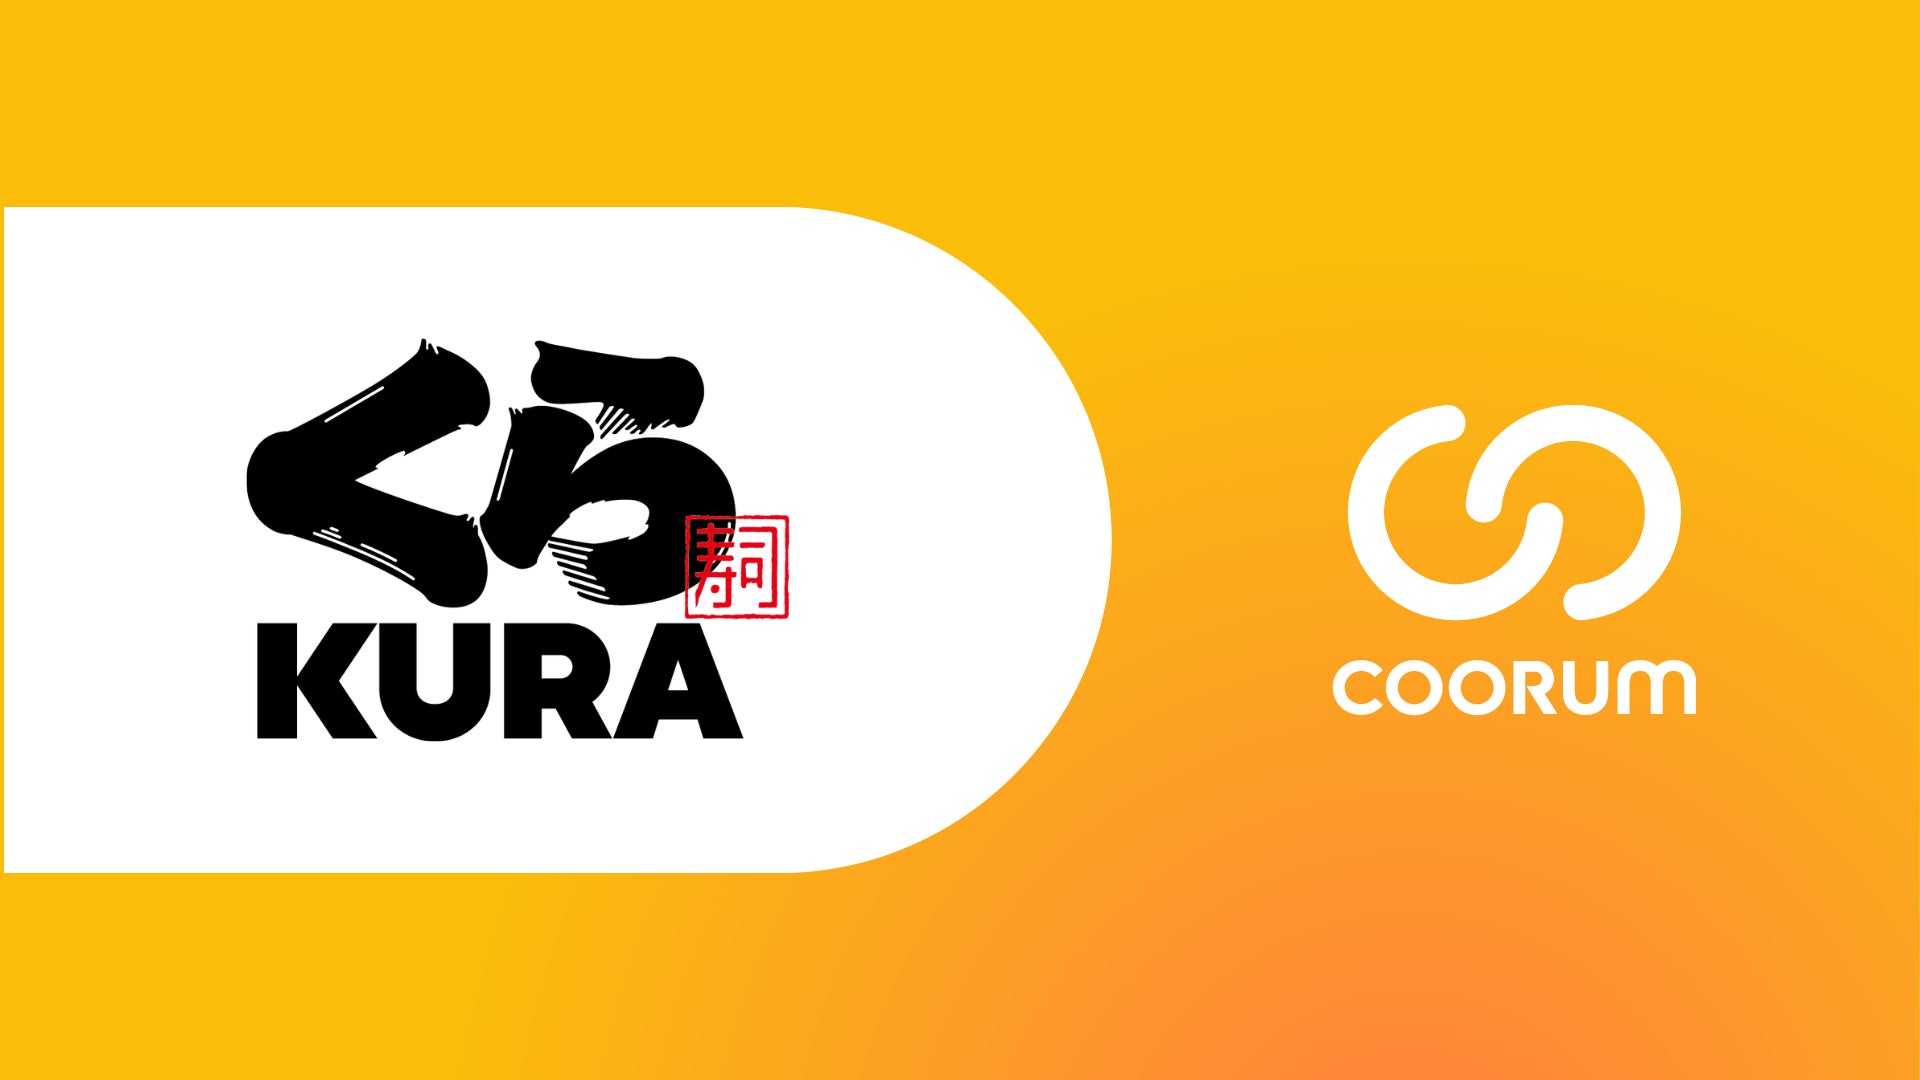 くら寿司株式会社がロイヤル顧客プラットフォーム「coorum(コーラム)」を導入